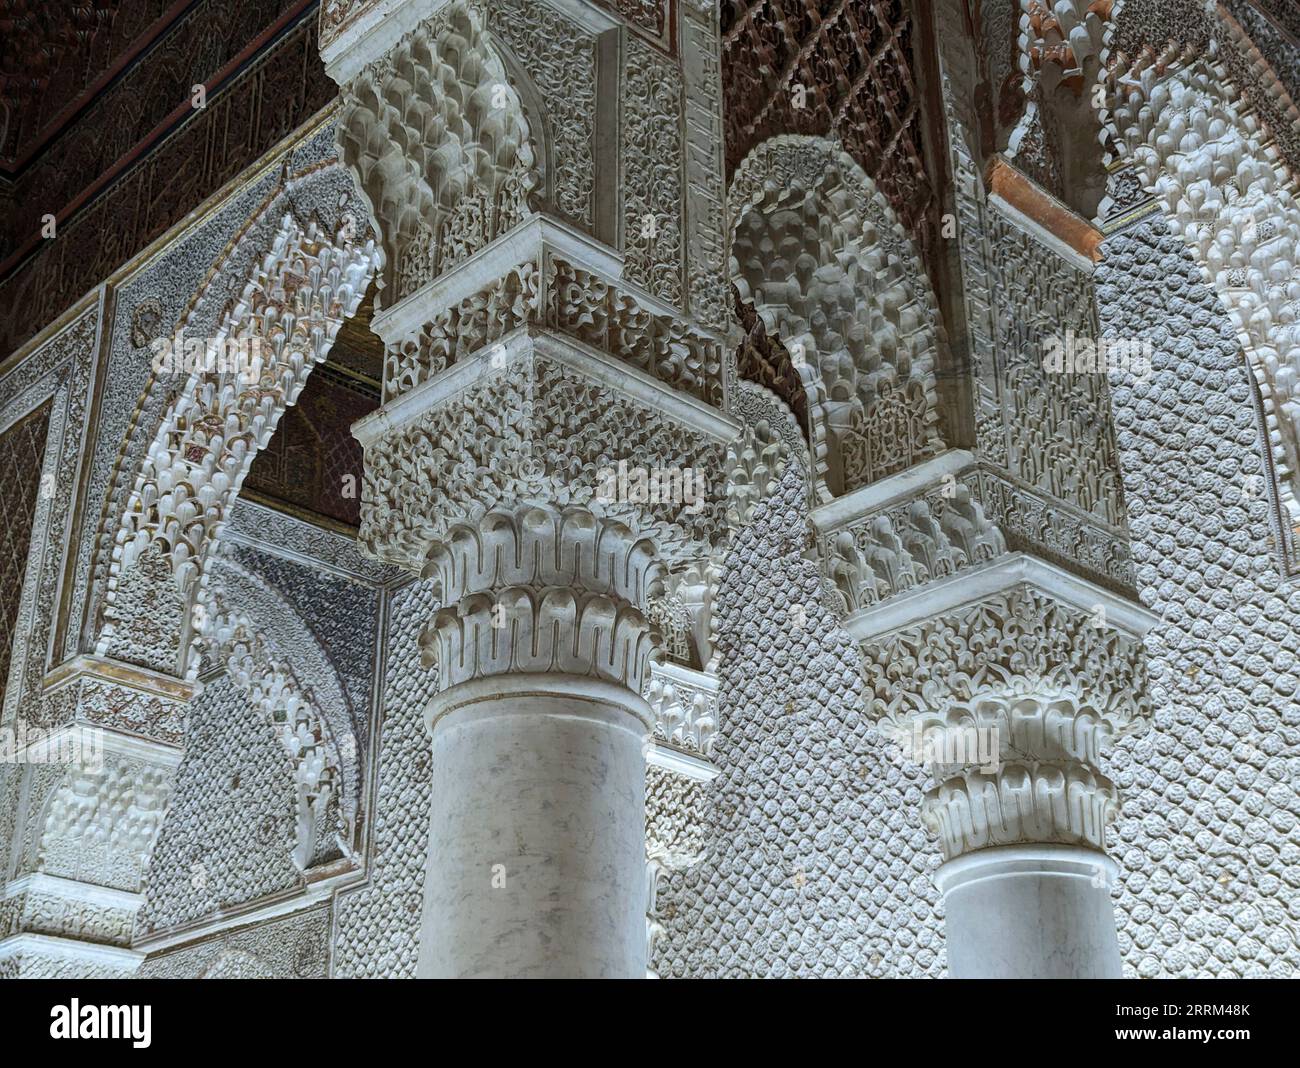 Marrakech, Marocco, decorazione orientale delle famose tombe saadiane nel centro di Marrakech, Marocco Foto Stock